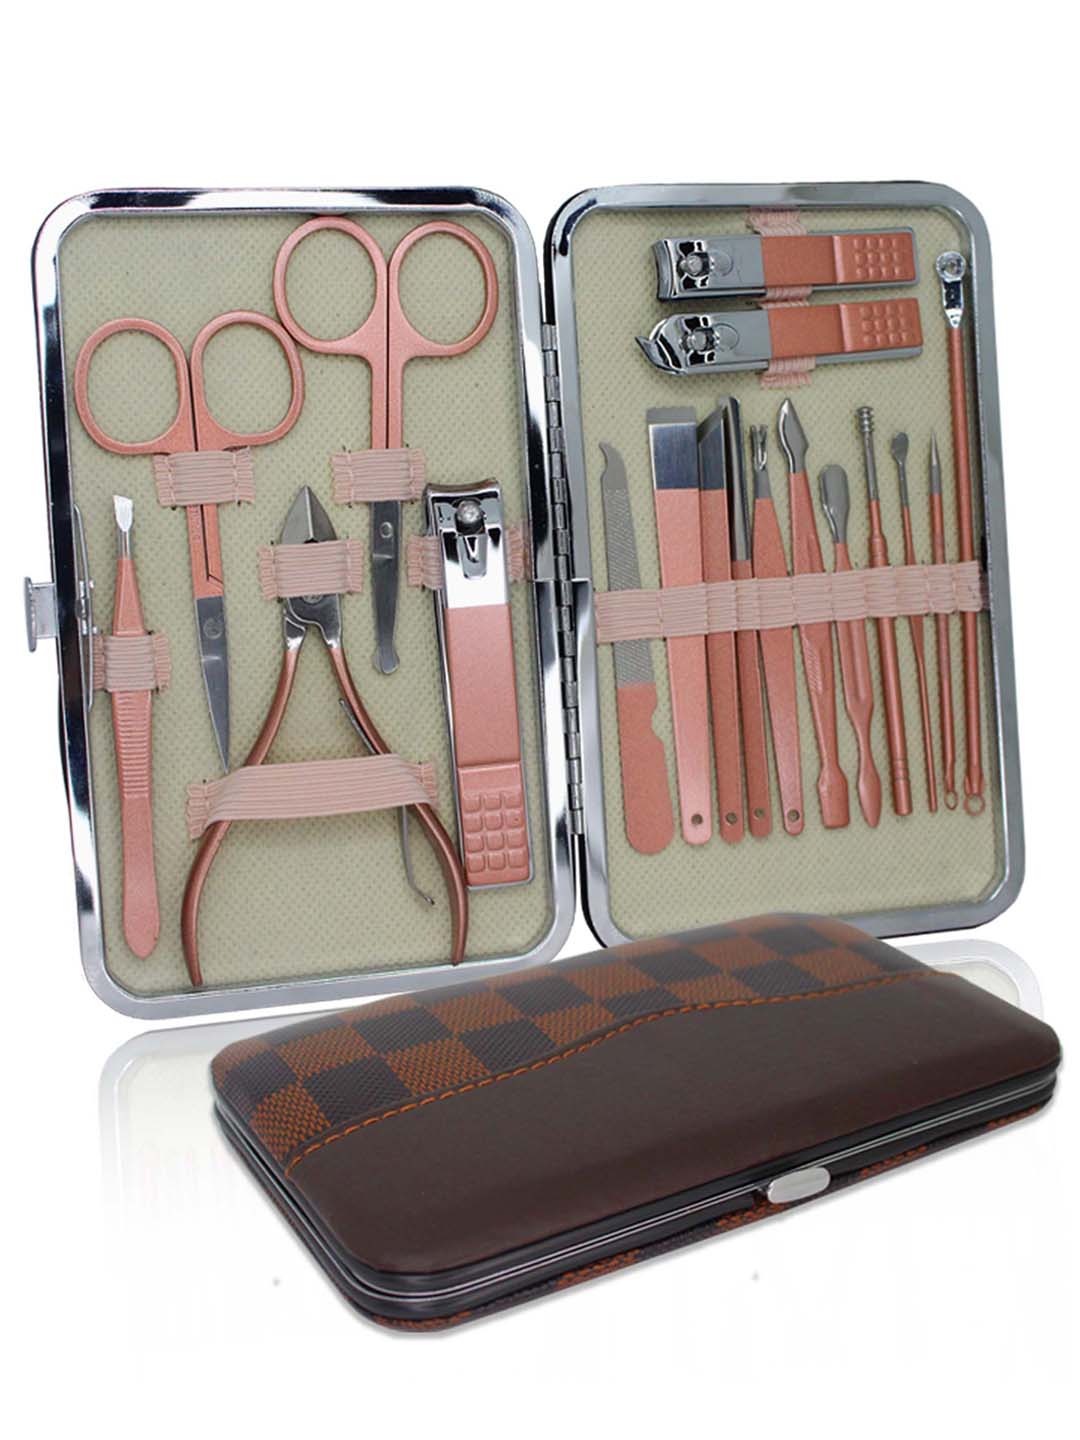 Manicure Pedicure Kit